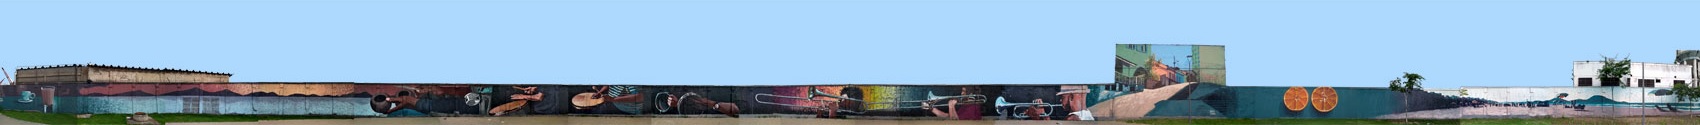 Grande mural de Apolo Torres leva vida à região do Porto, no Rio de Janeiro